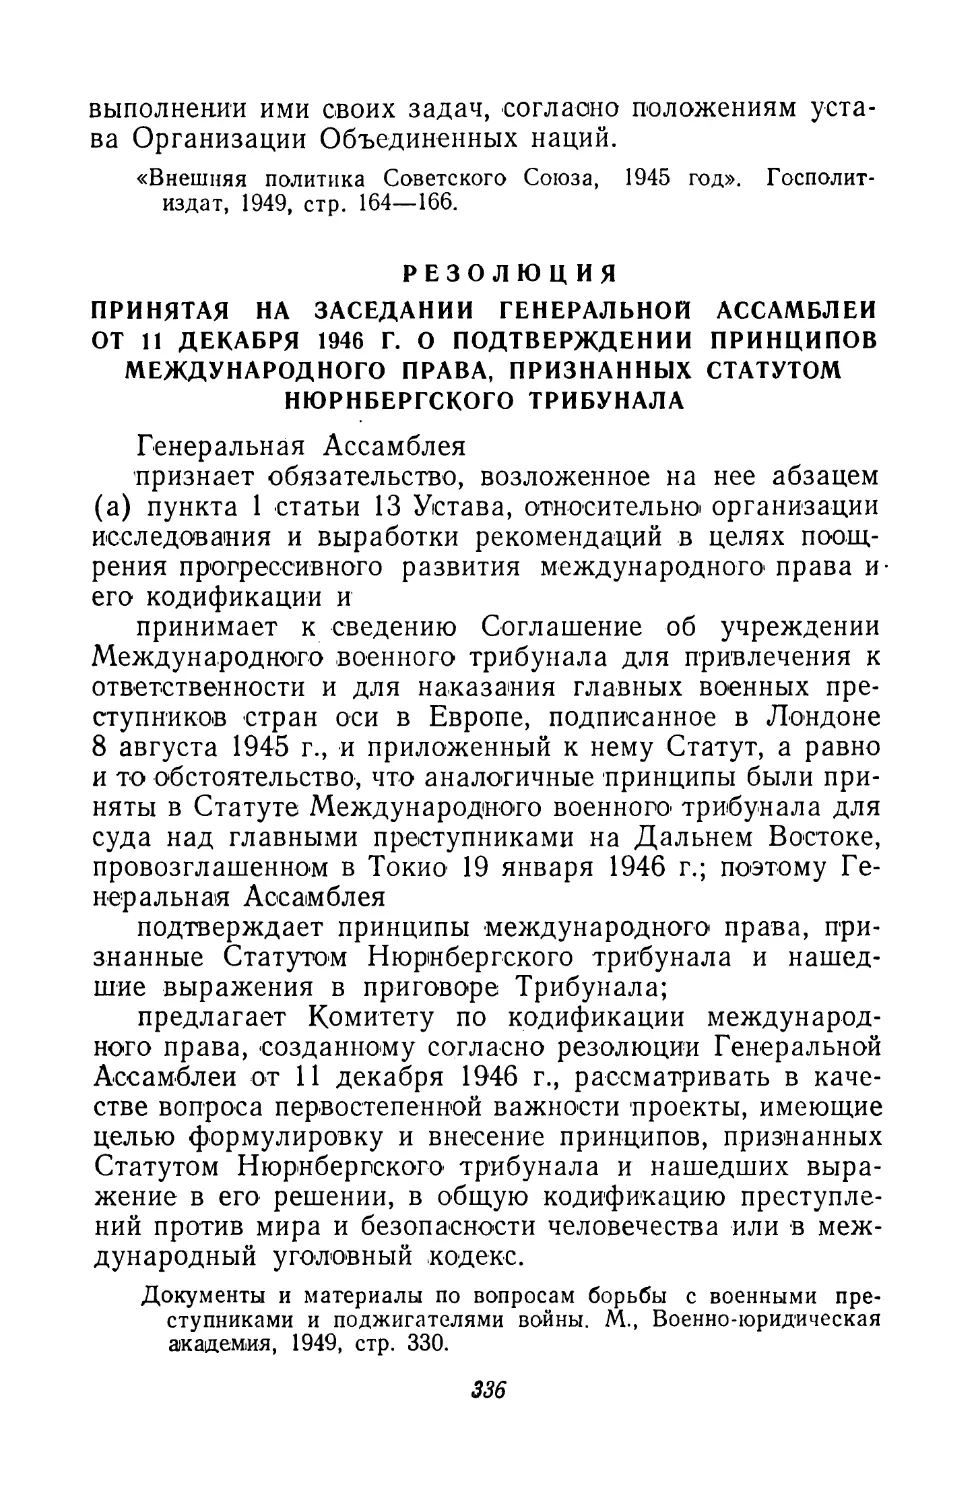 4. Резолюция, принятая на заседании Генеральной Ассамблеи 11 декабря 1946 г. о подтверждении принципов международного права, признанных статутом Нюрнбергского трибунала